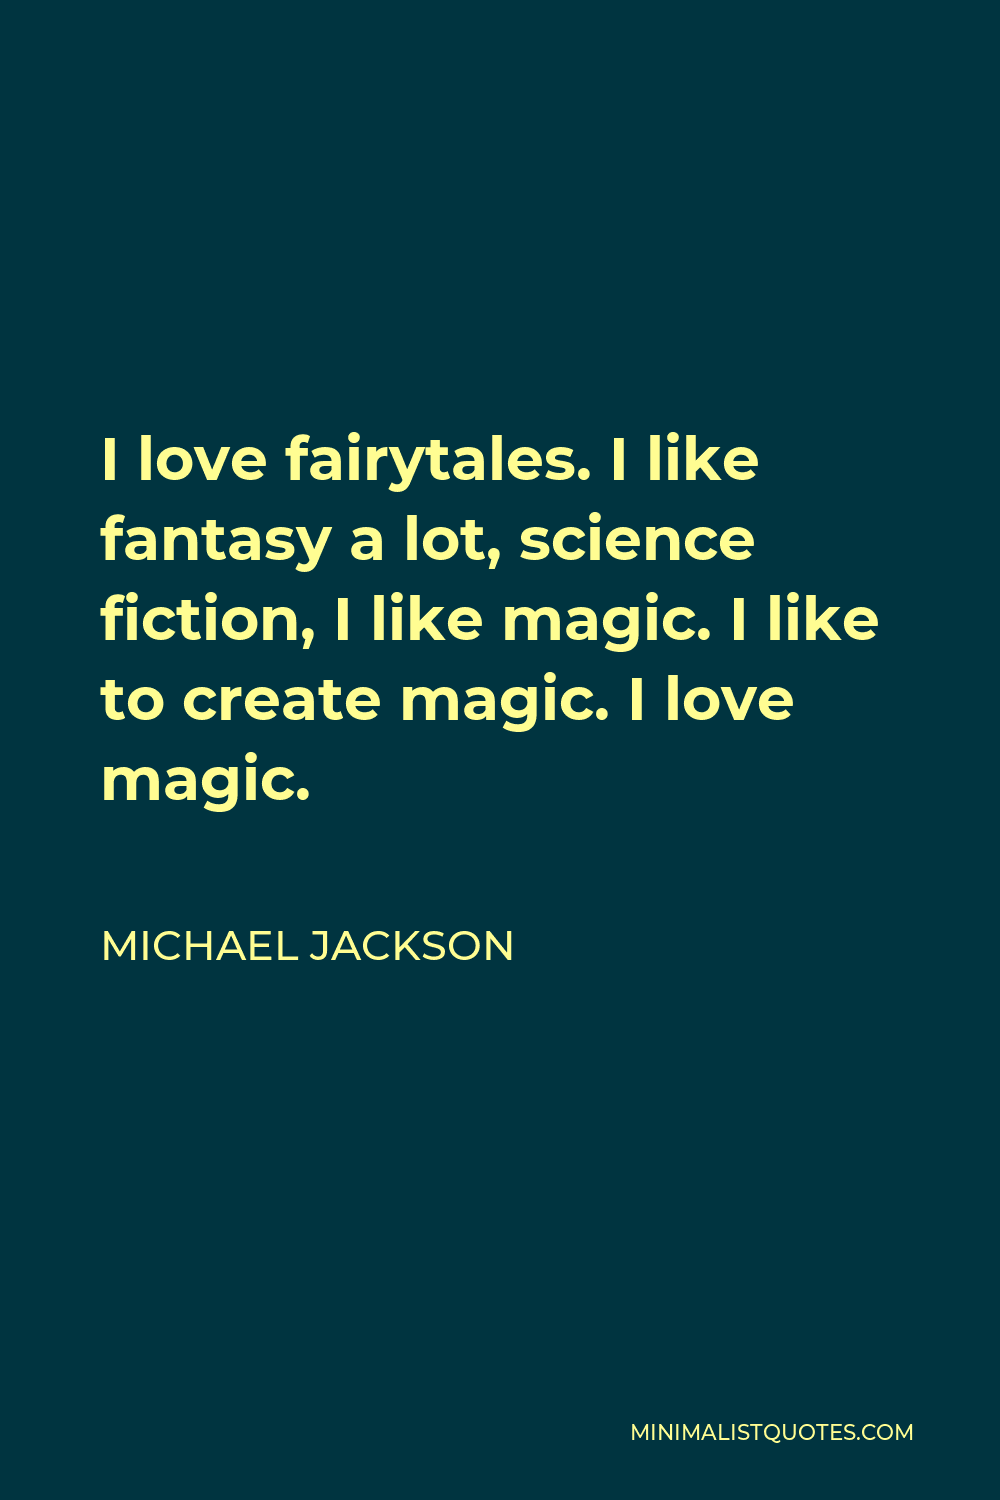 Michael Jackson Quote - I love fairytales. I like fantasy a lot, science fiction, I like magic. I like to create magic. I love magic.